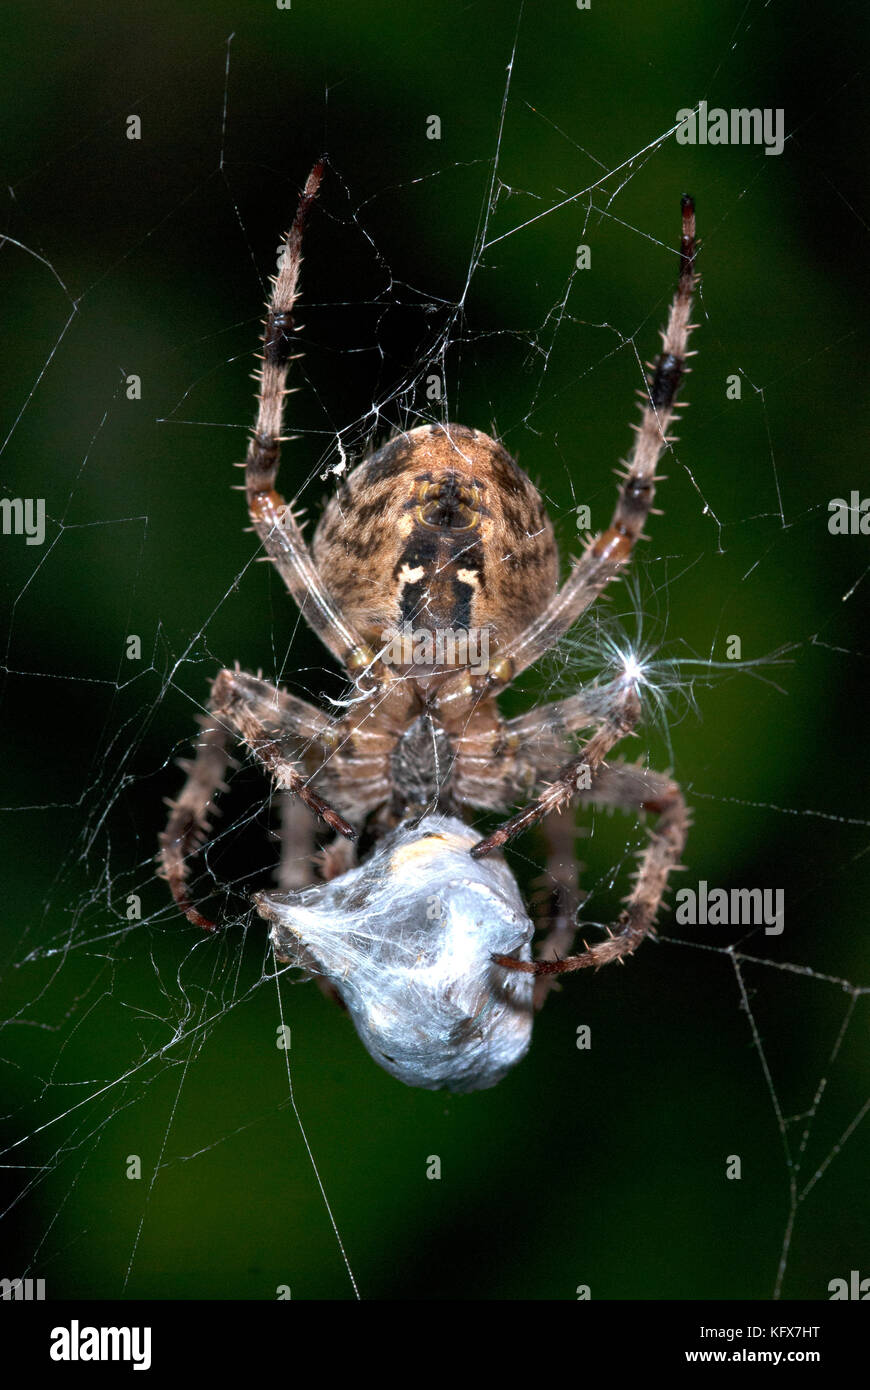 Giardino spider, araneus diadematus, sul web cocooning preda vittima, con fili di seta, catturati, predation, predator Foto Stock